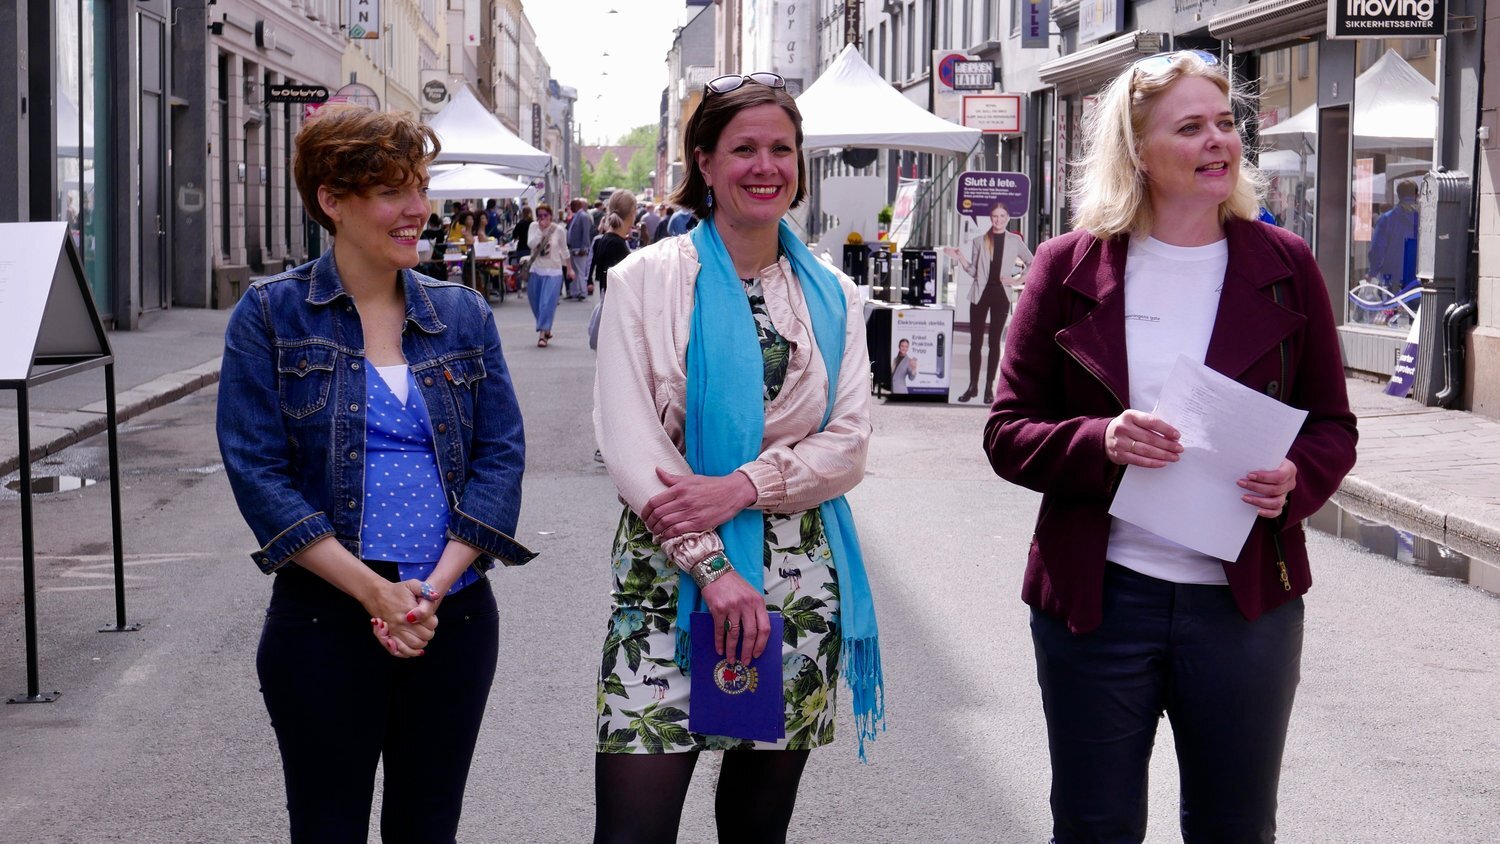  Byråd for byutvikling Hanna E. Marcussen (midten) sammen med kunstprodusent Kristine Wessel (høyre) og kunstner Karoline Hjorth (venstre) på utstillingsåpning for “People of Dronningens gate”. Kunstnerduo Hjorth&amp;Ikonen har fotografert, intervjue